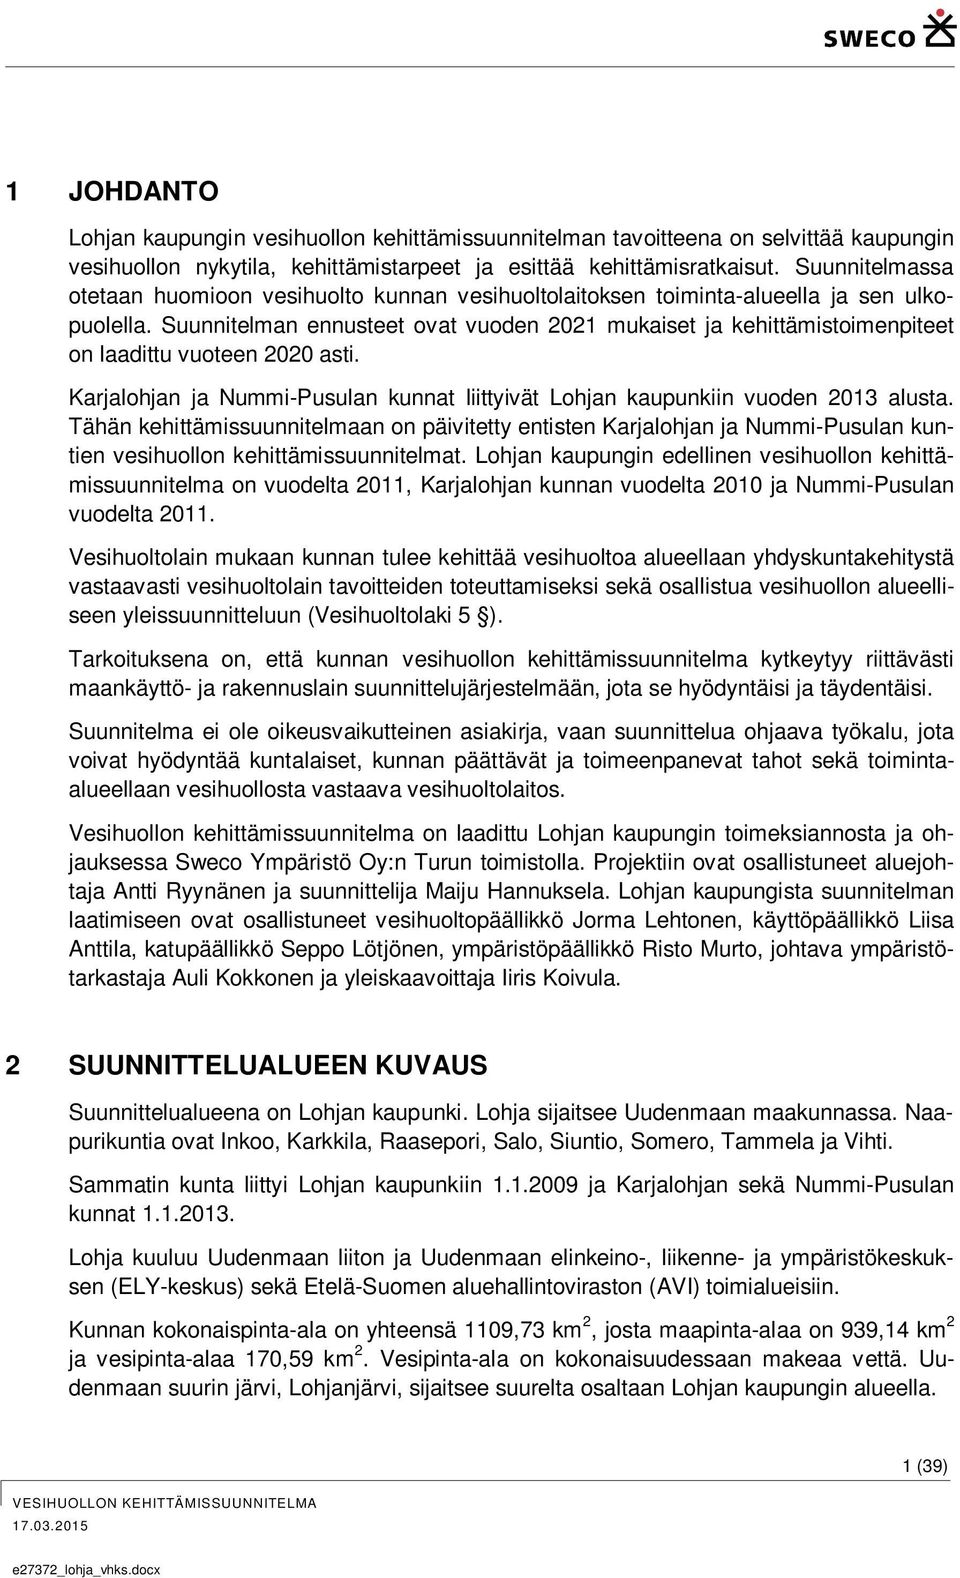 Suunnitelman ennusteet ovat vuoden 2021 mukaiset ja kehittämistoimenpiteet on laadittu vuoteen 2020 asti. Karjalohjan ja Nummi-Pusulan kunnat liittyivät Lohjan kaupunkiin vuoden 2013 alusta.